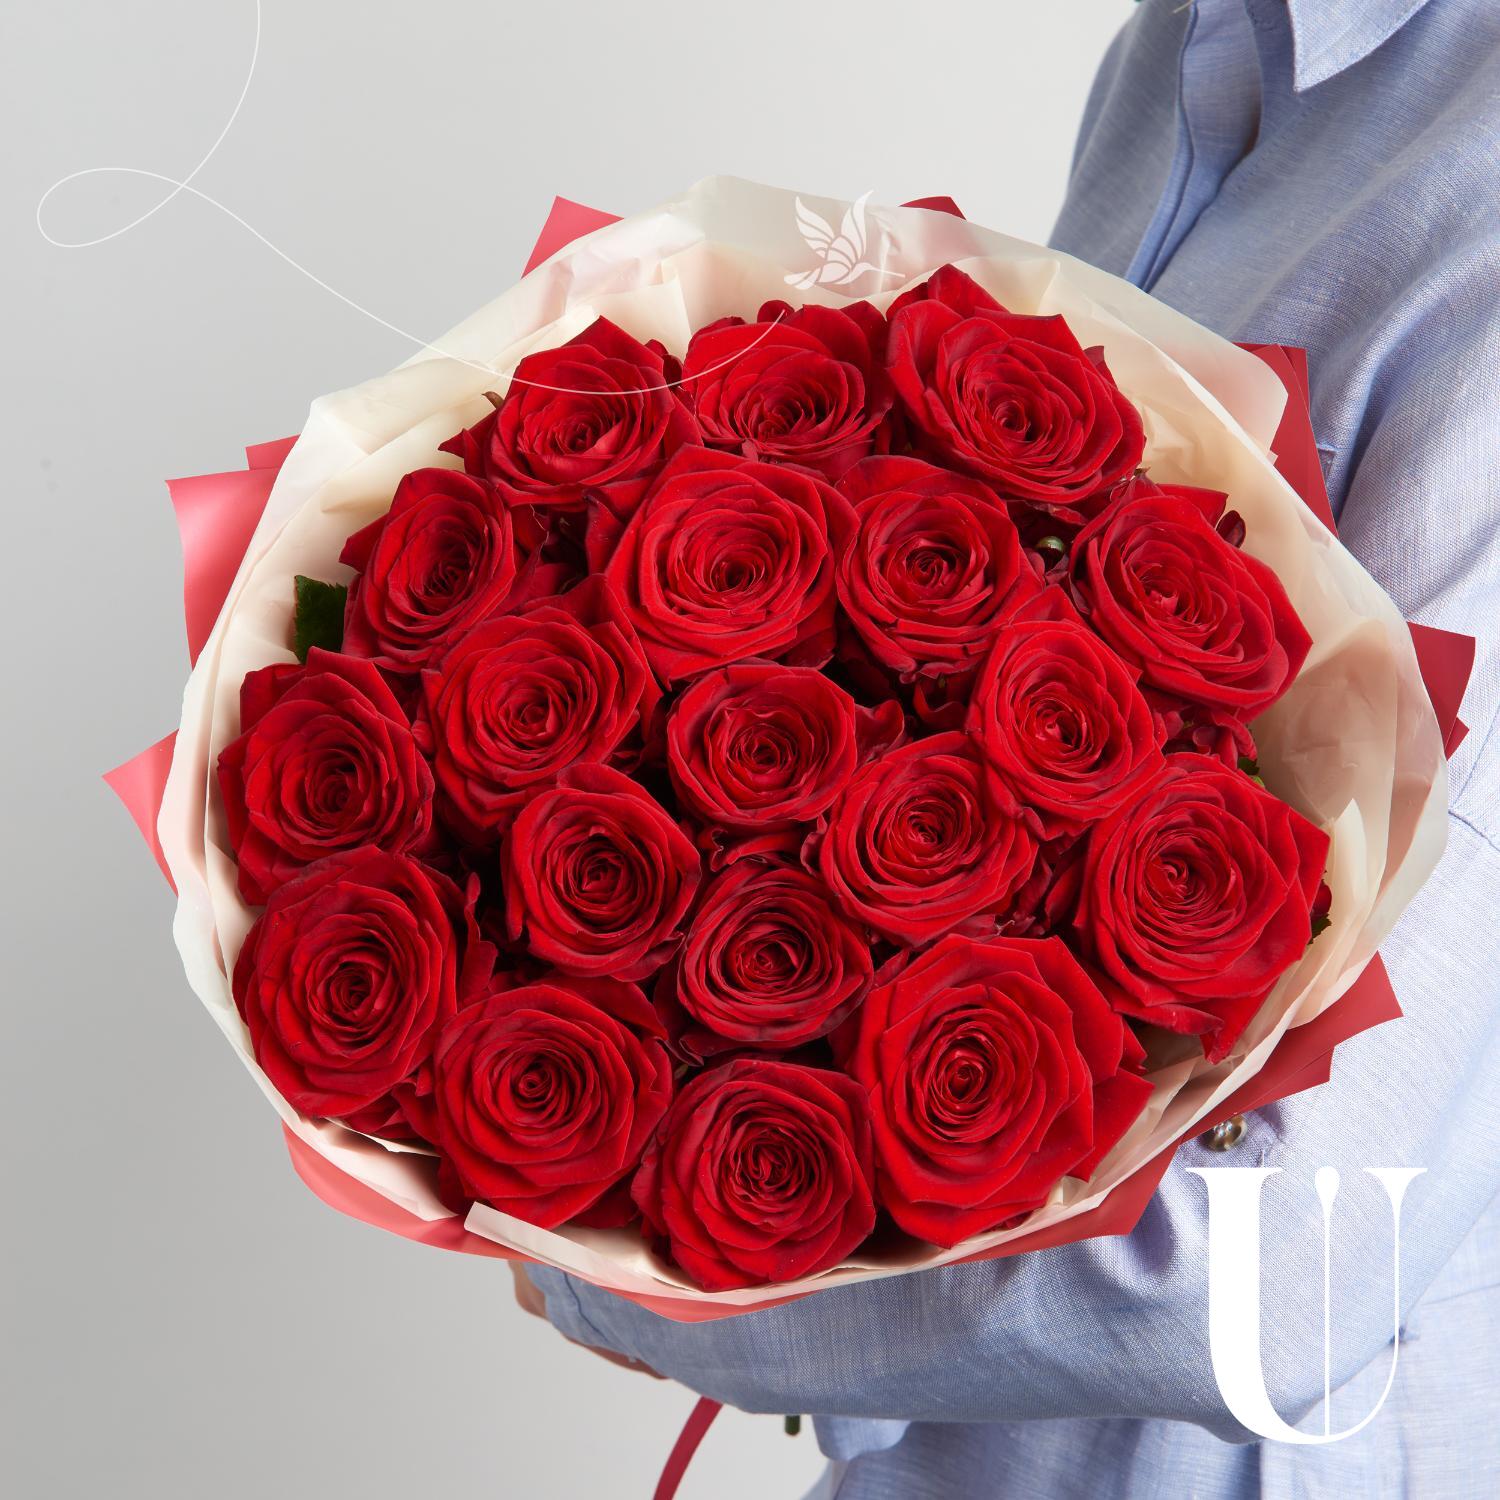 Букет Гран При 19 красных роз - заказать с доставкой недорого в Москве по  цене 3 250 руб.